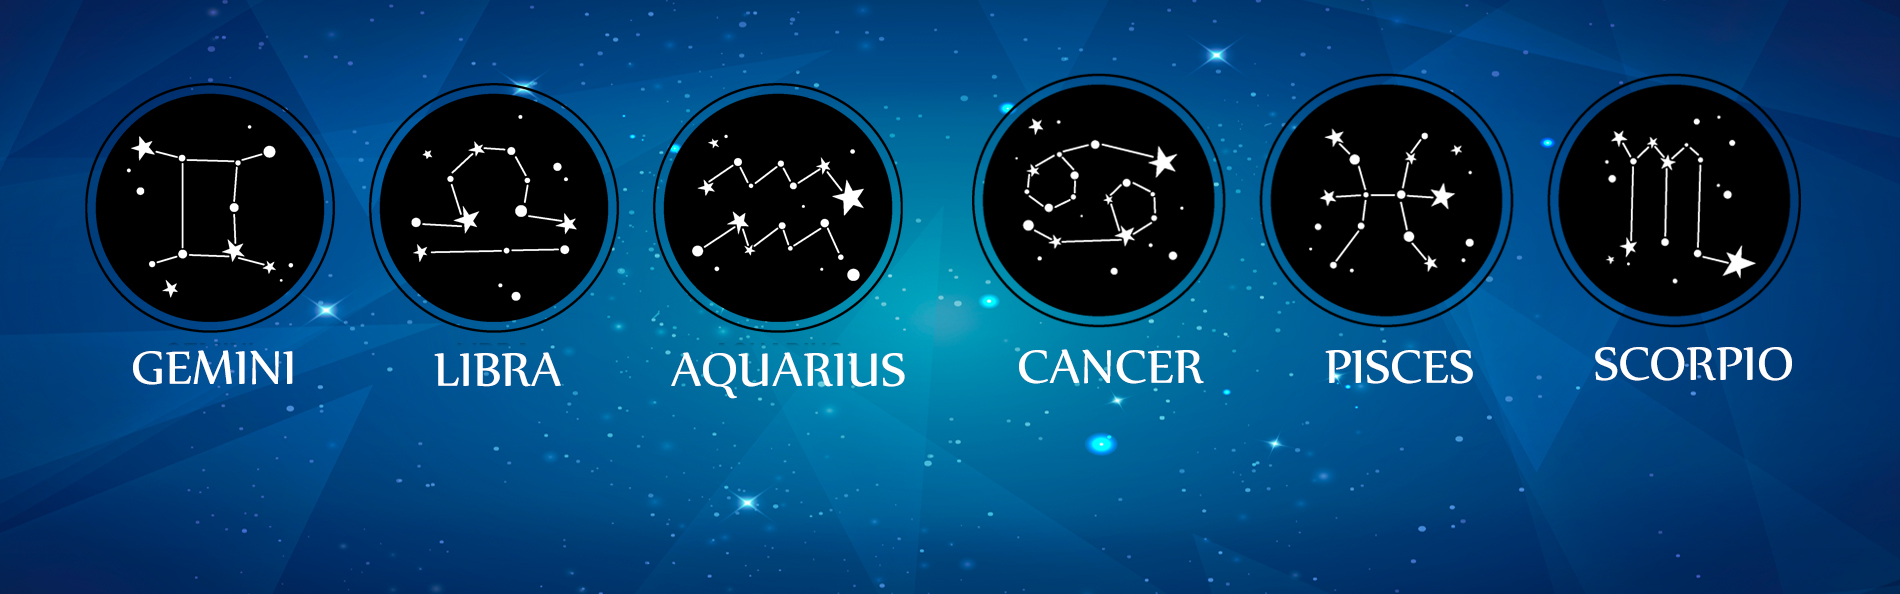 Online horoscope